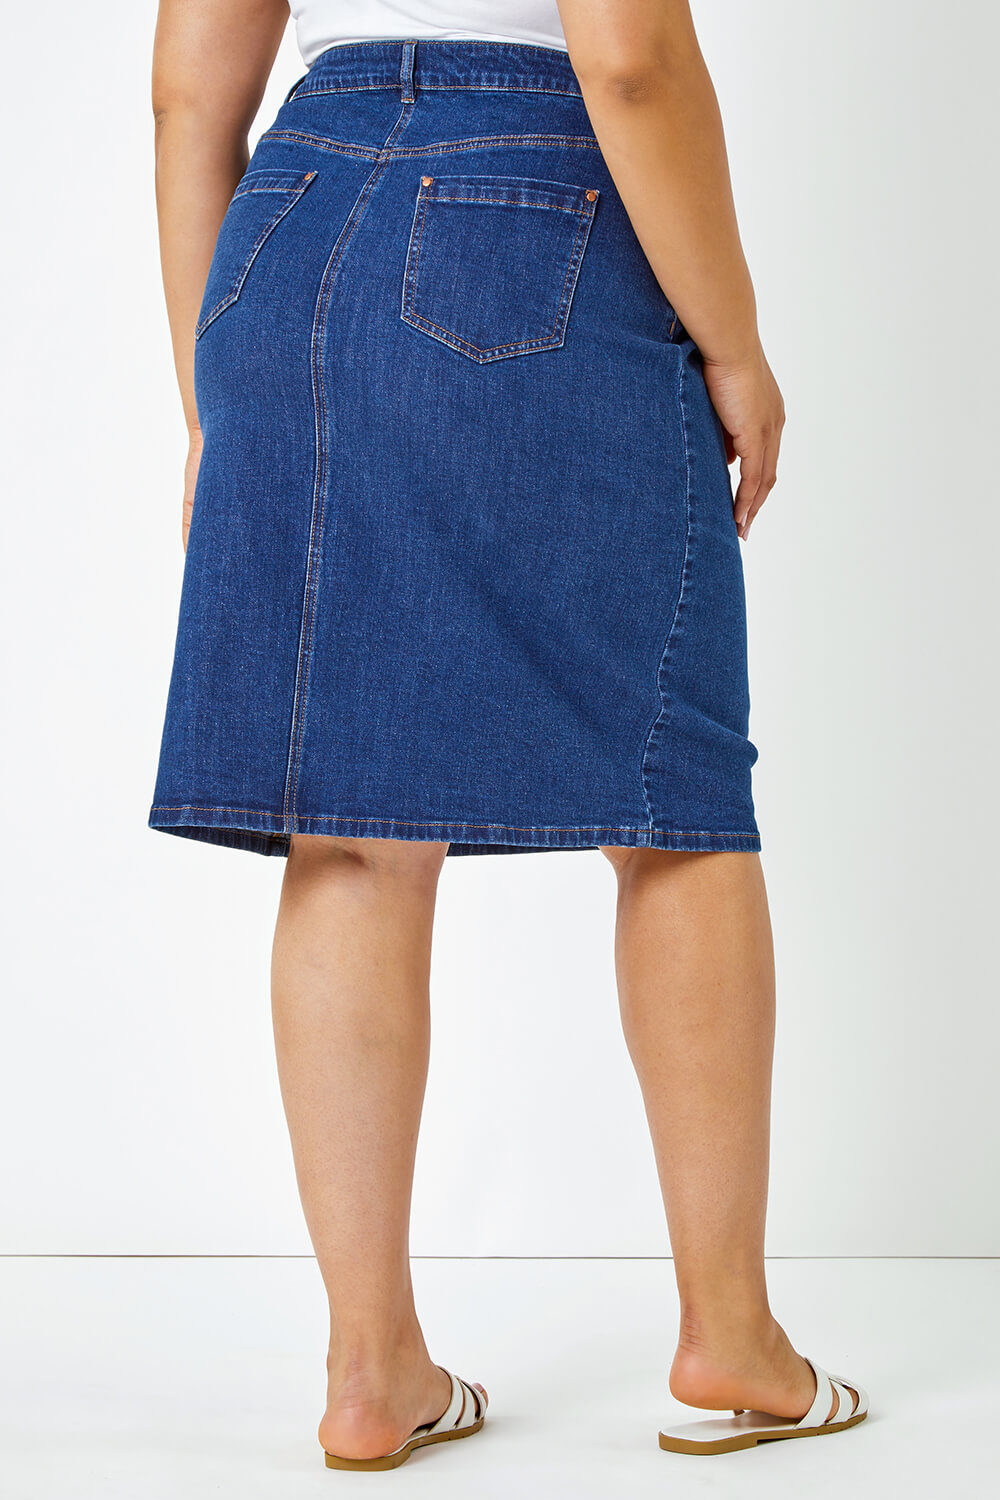 Indigo Curve Cotton A-Line Denim Skirt, Image 3 of 5